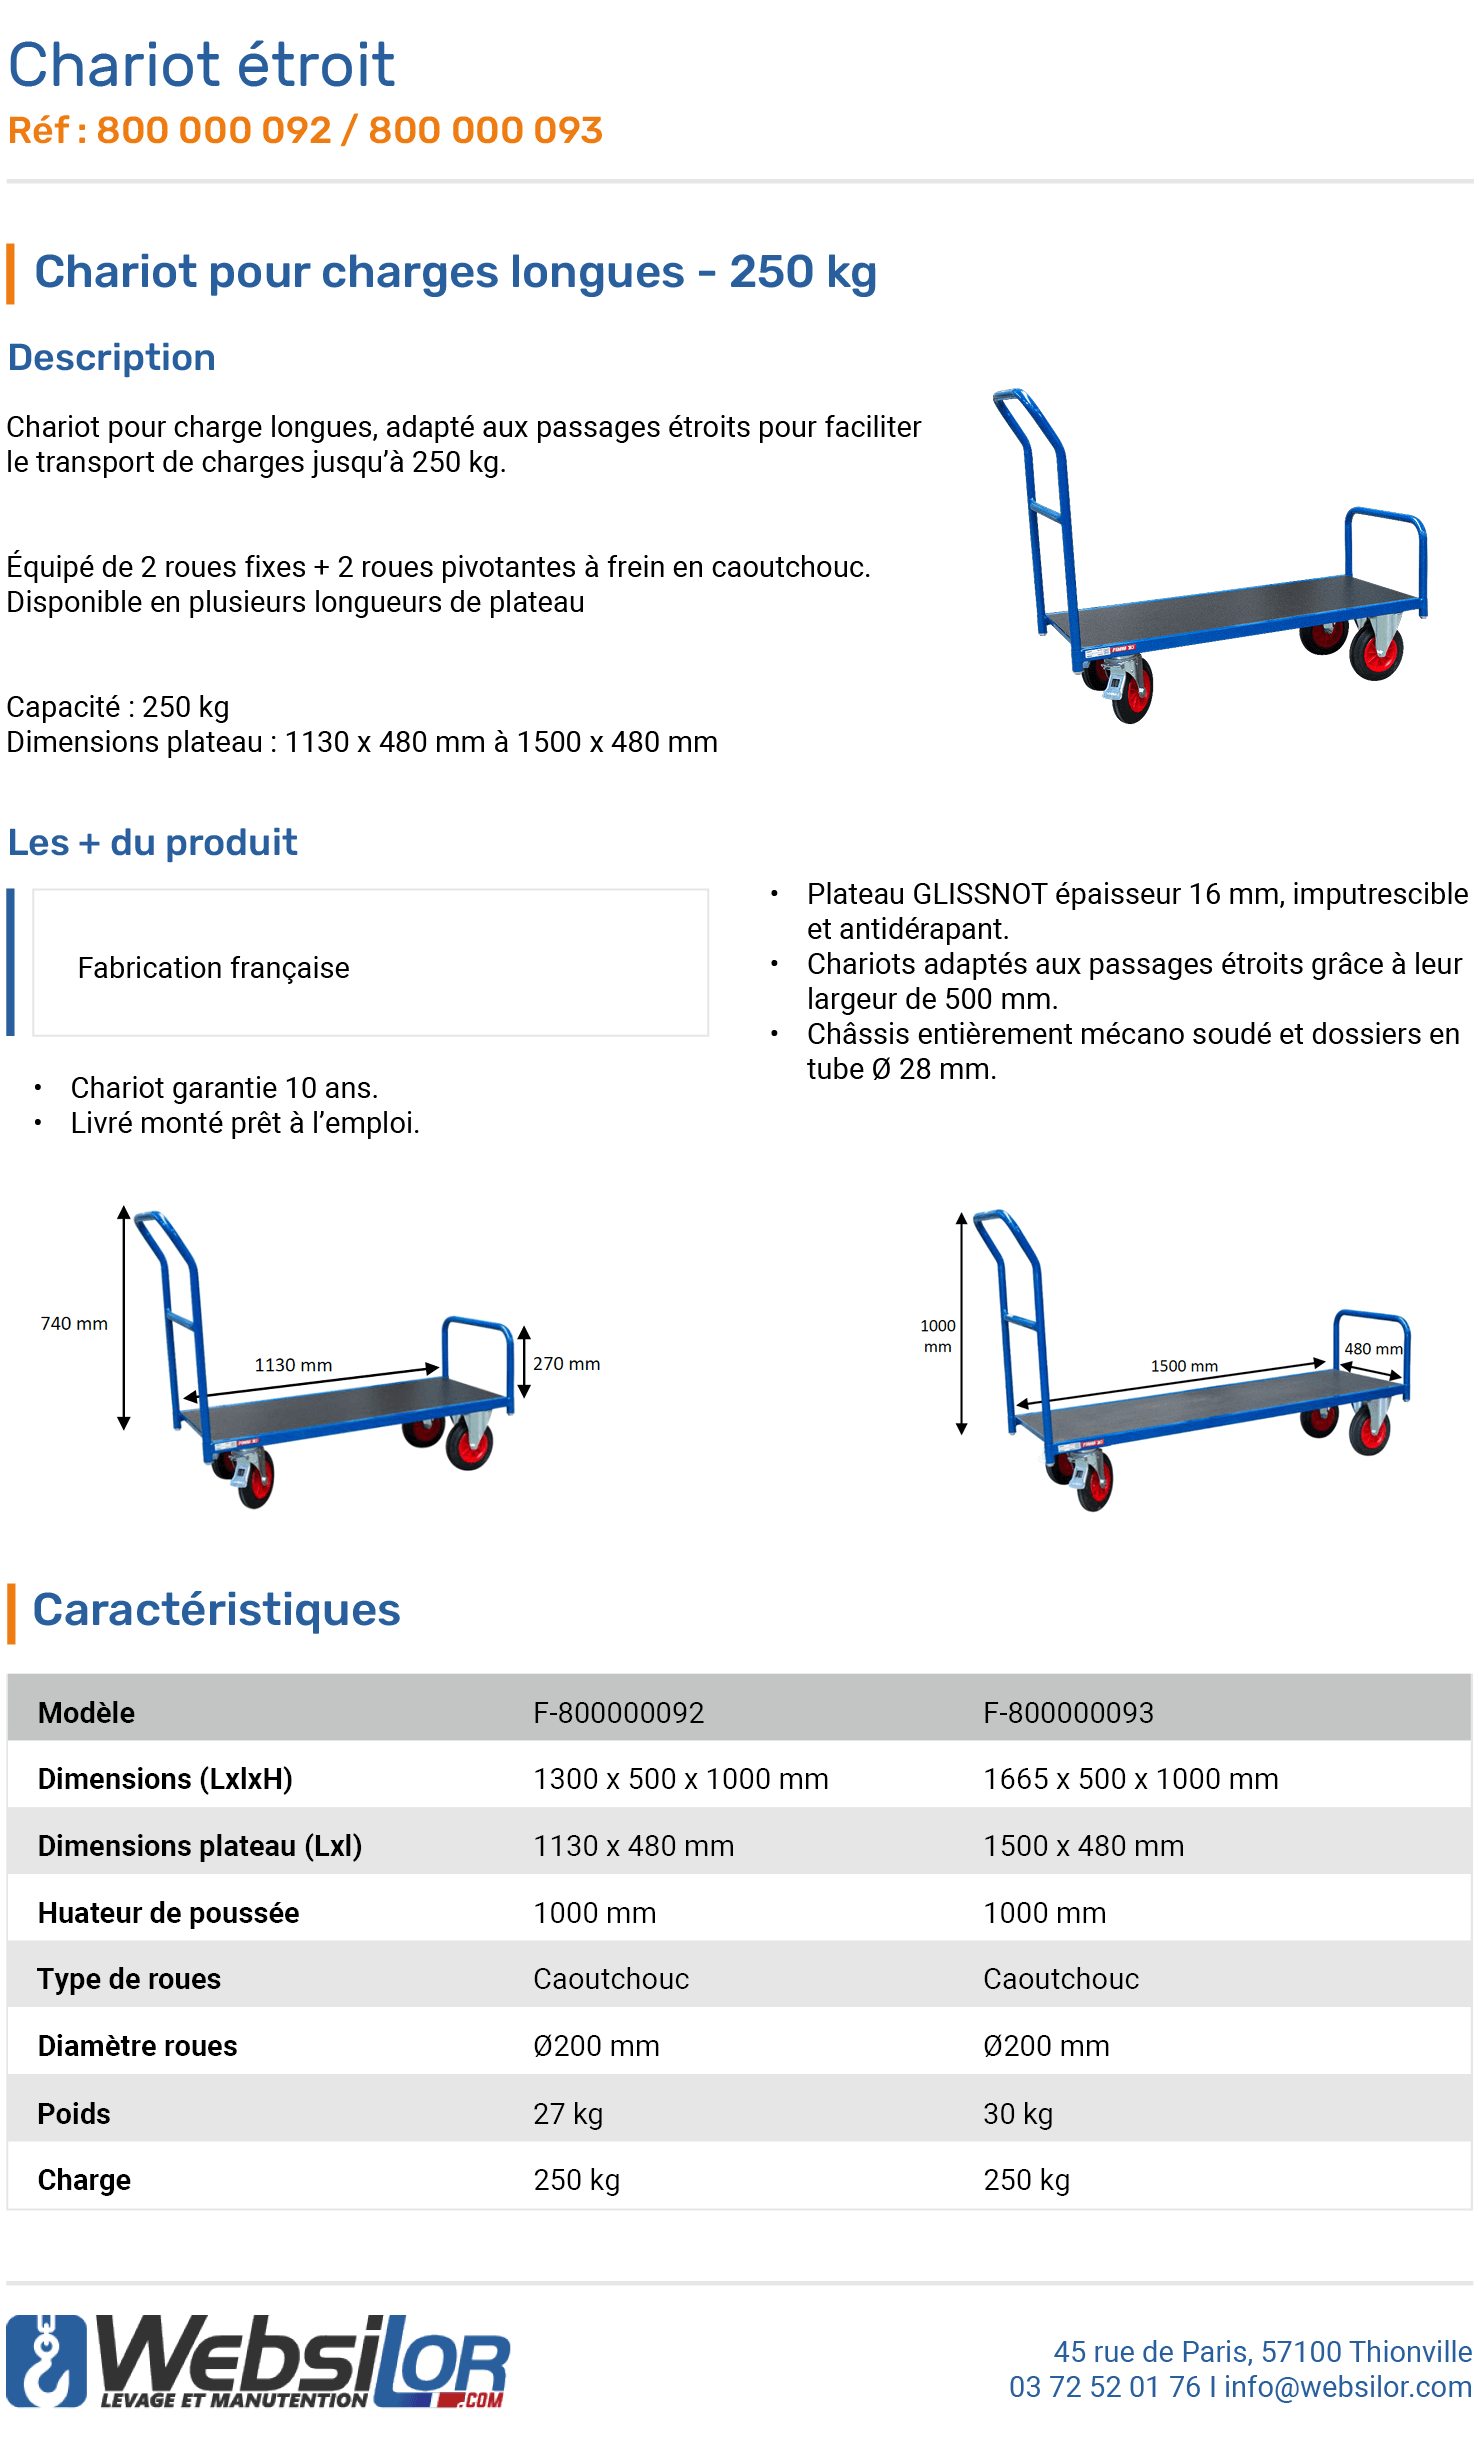 Informations techniques Chariot étroit charges longues - 250 kg